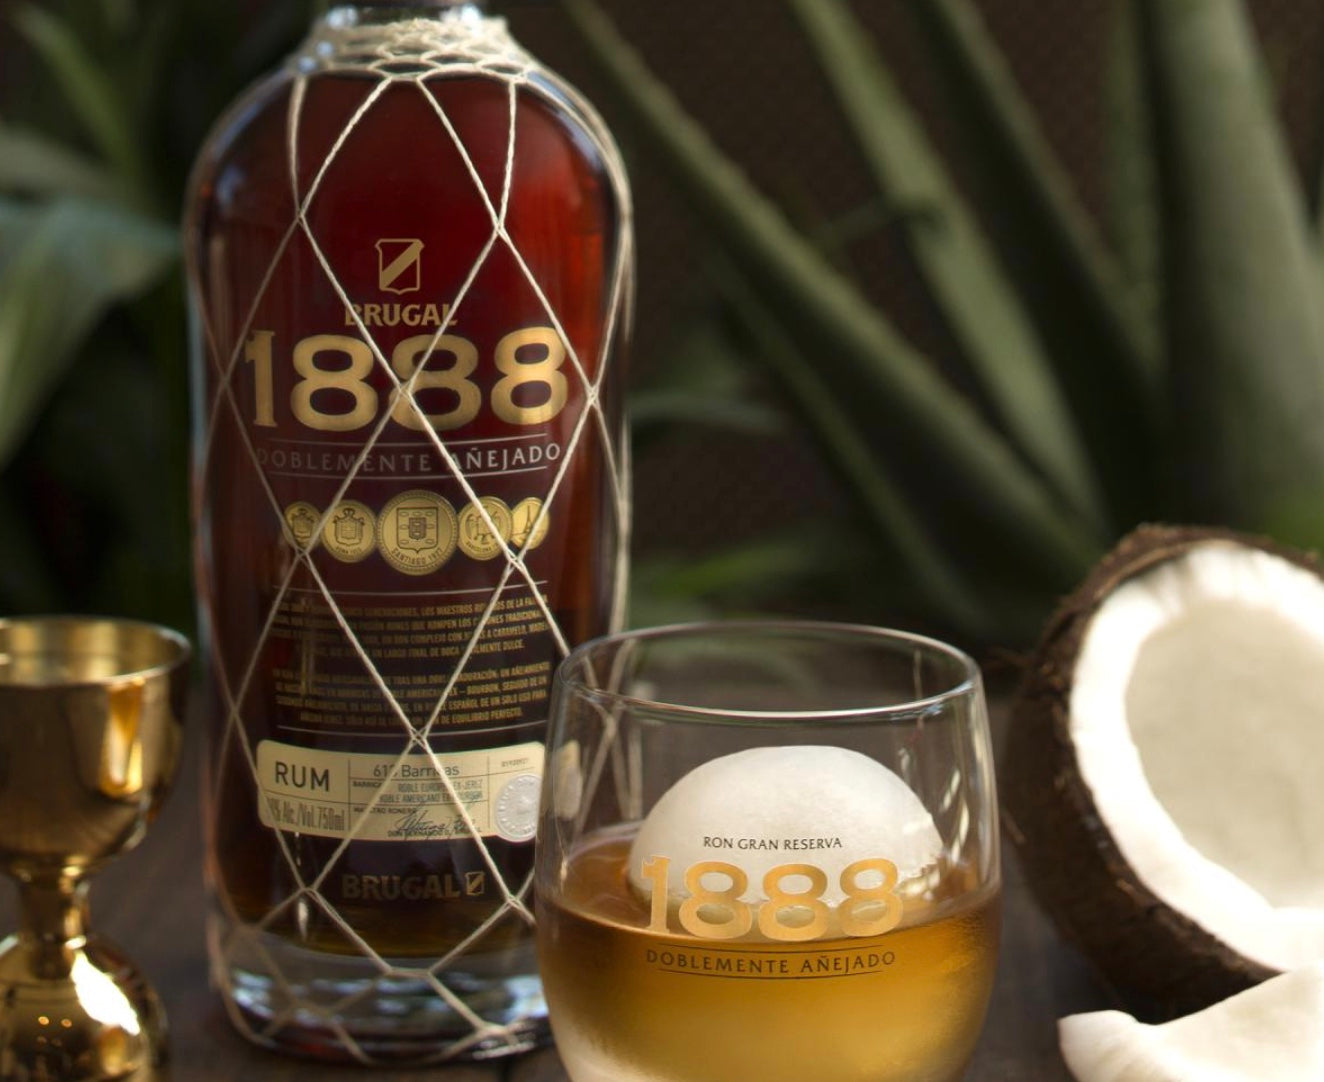 Brugal 1888 Doblemente Añejado Rum